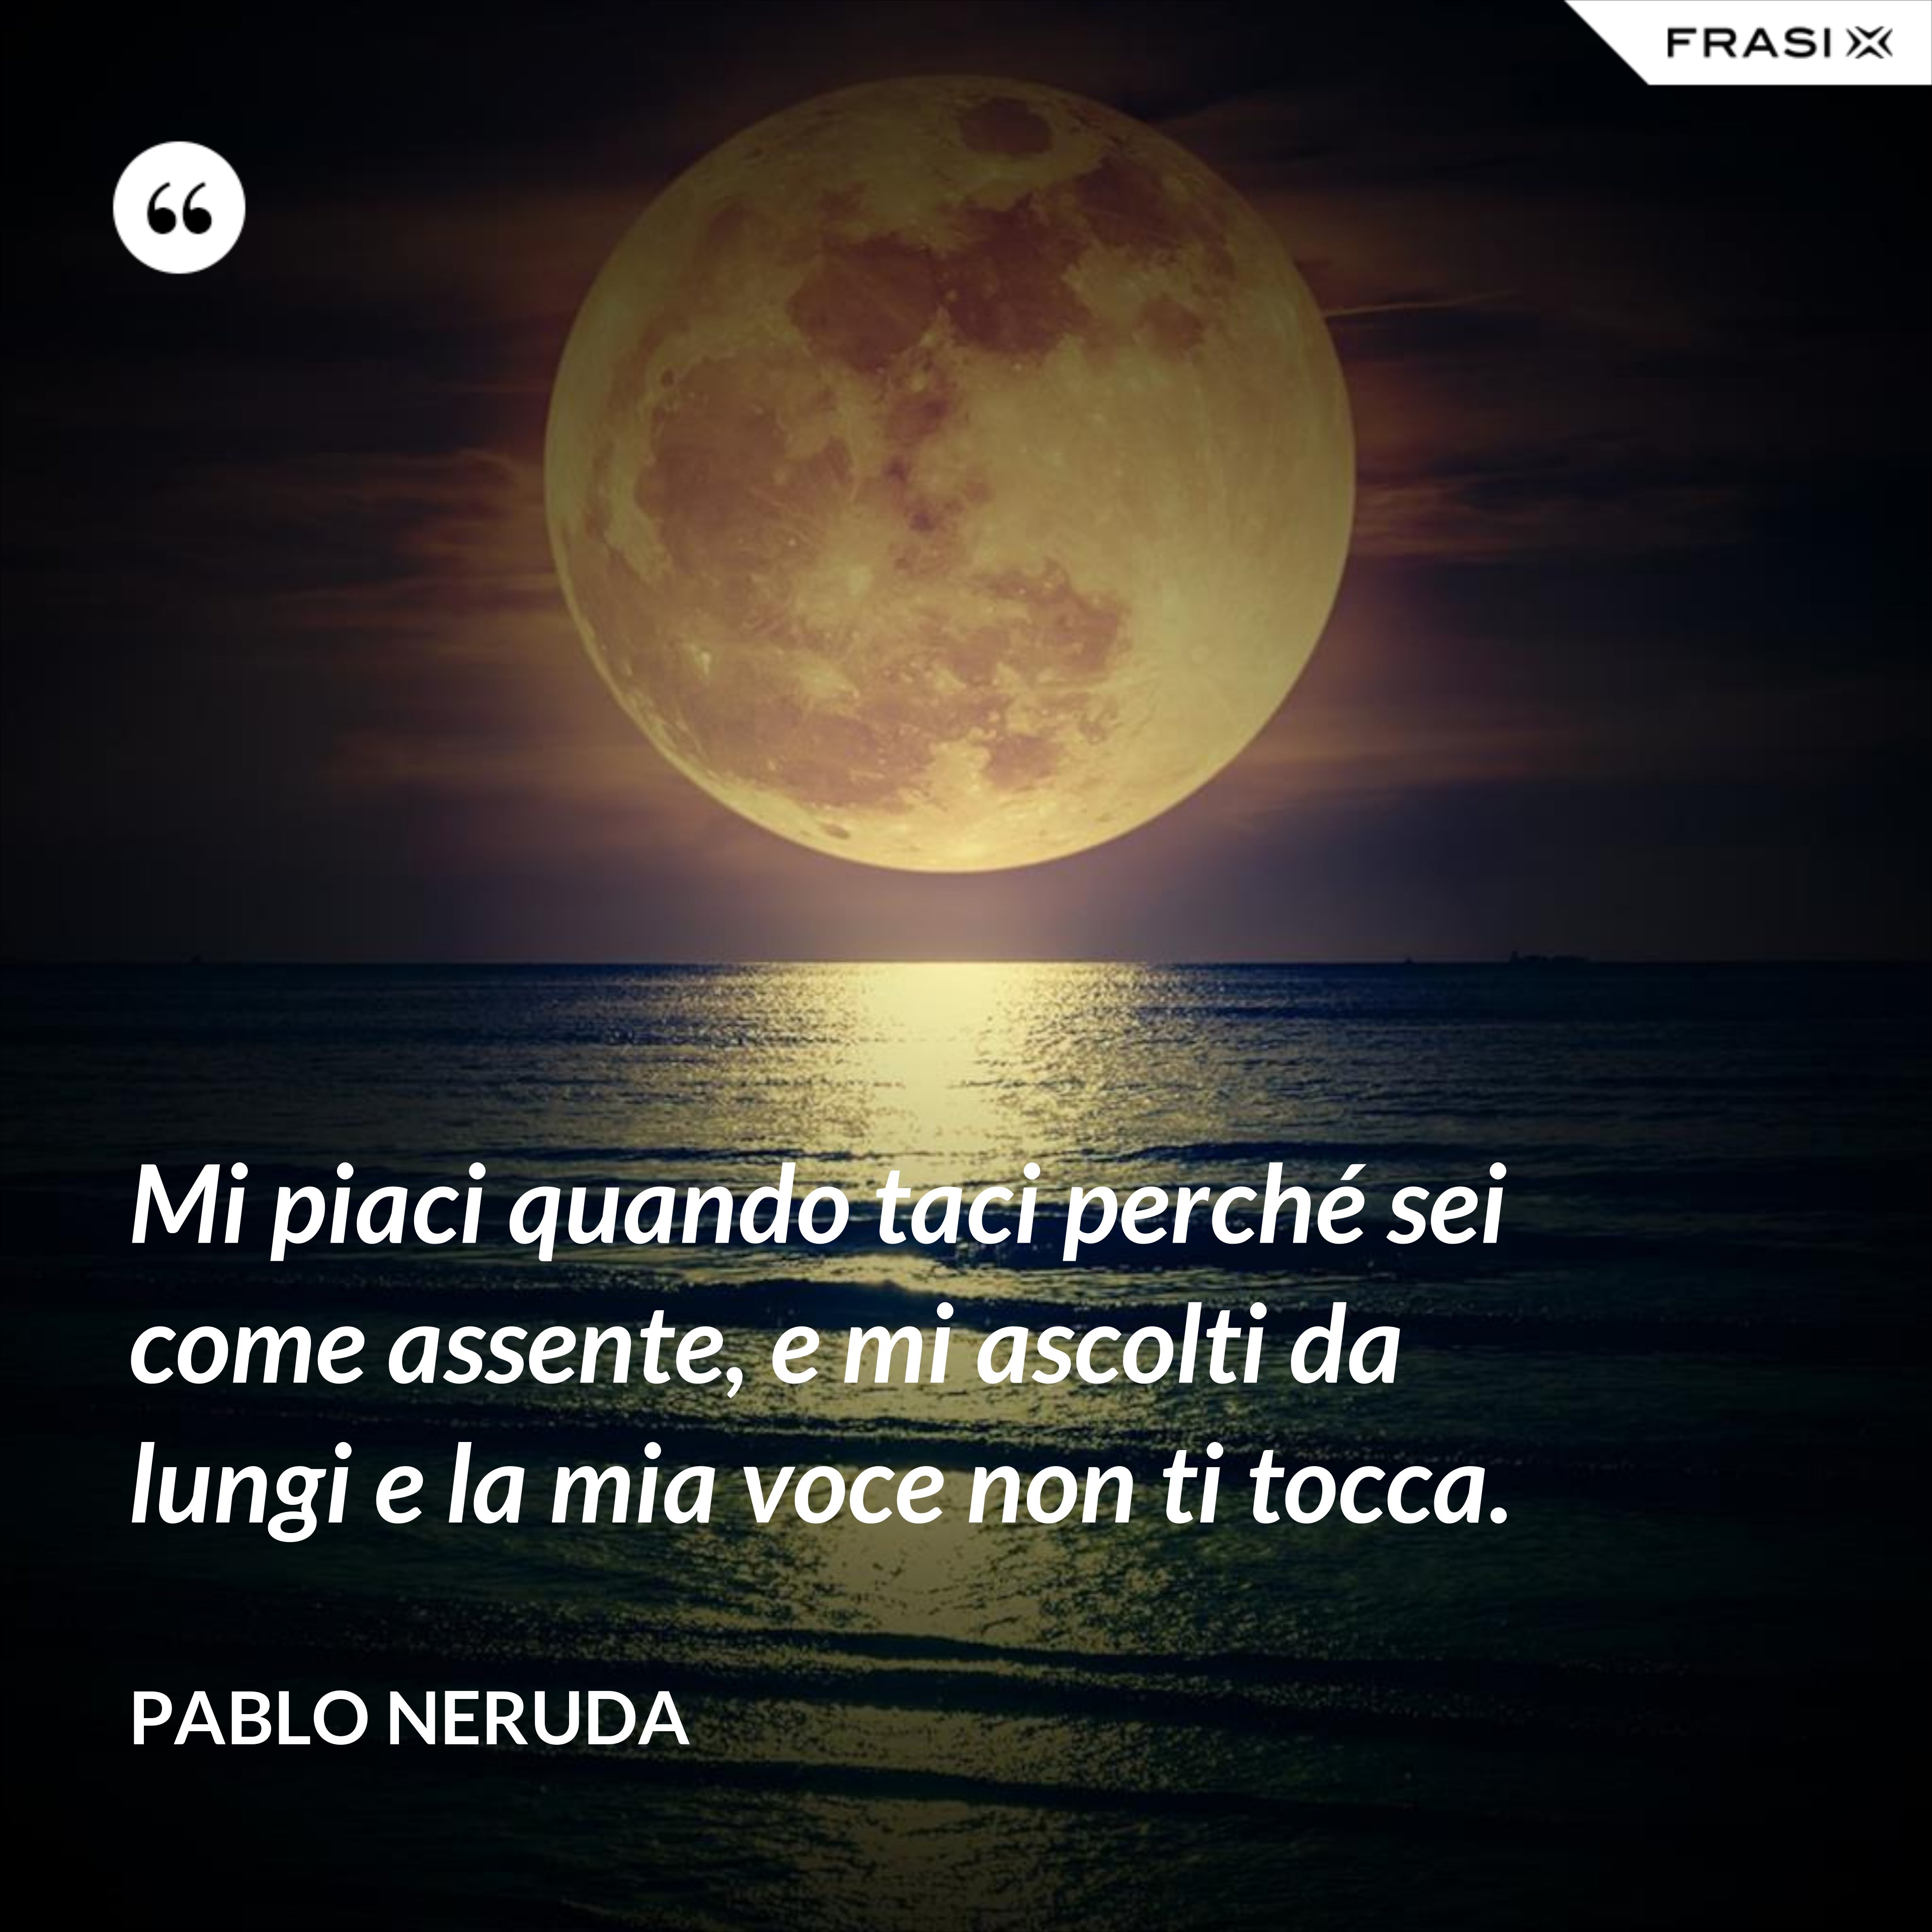 Mi piaci quando taci perché sei come assente, e mi ascolti da lungi e la mia voce non ti tocca. - Pablo Neruda